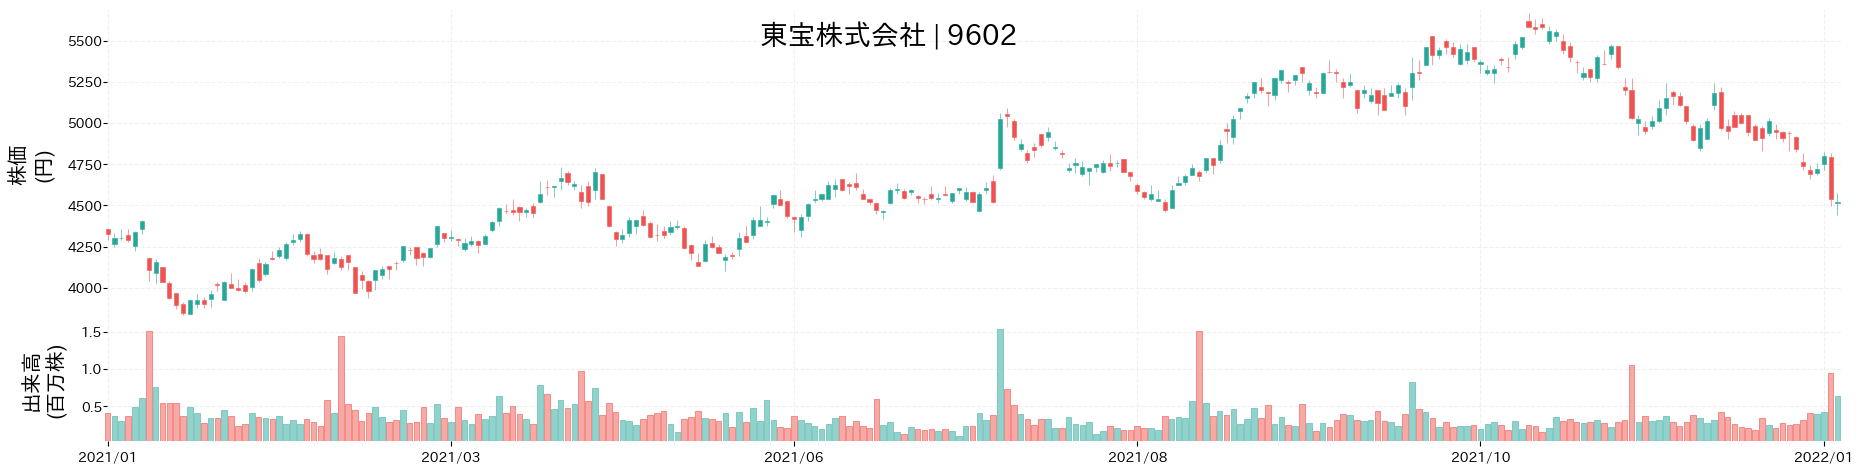 東宝の株価推移(2021)